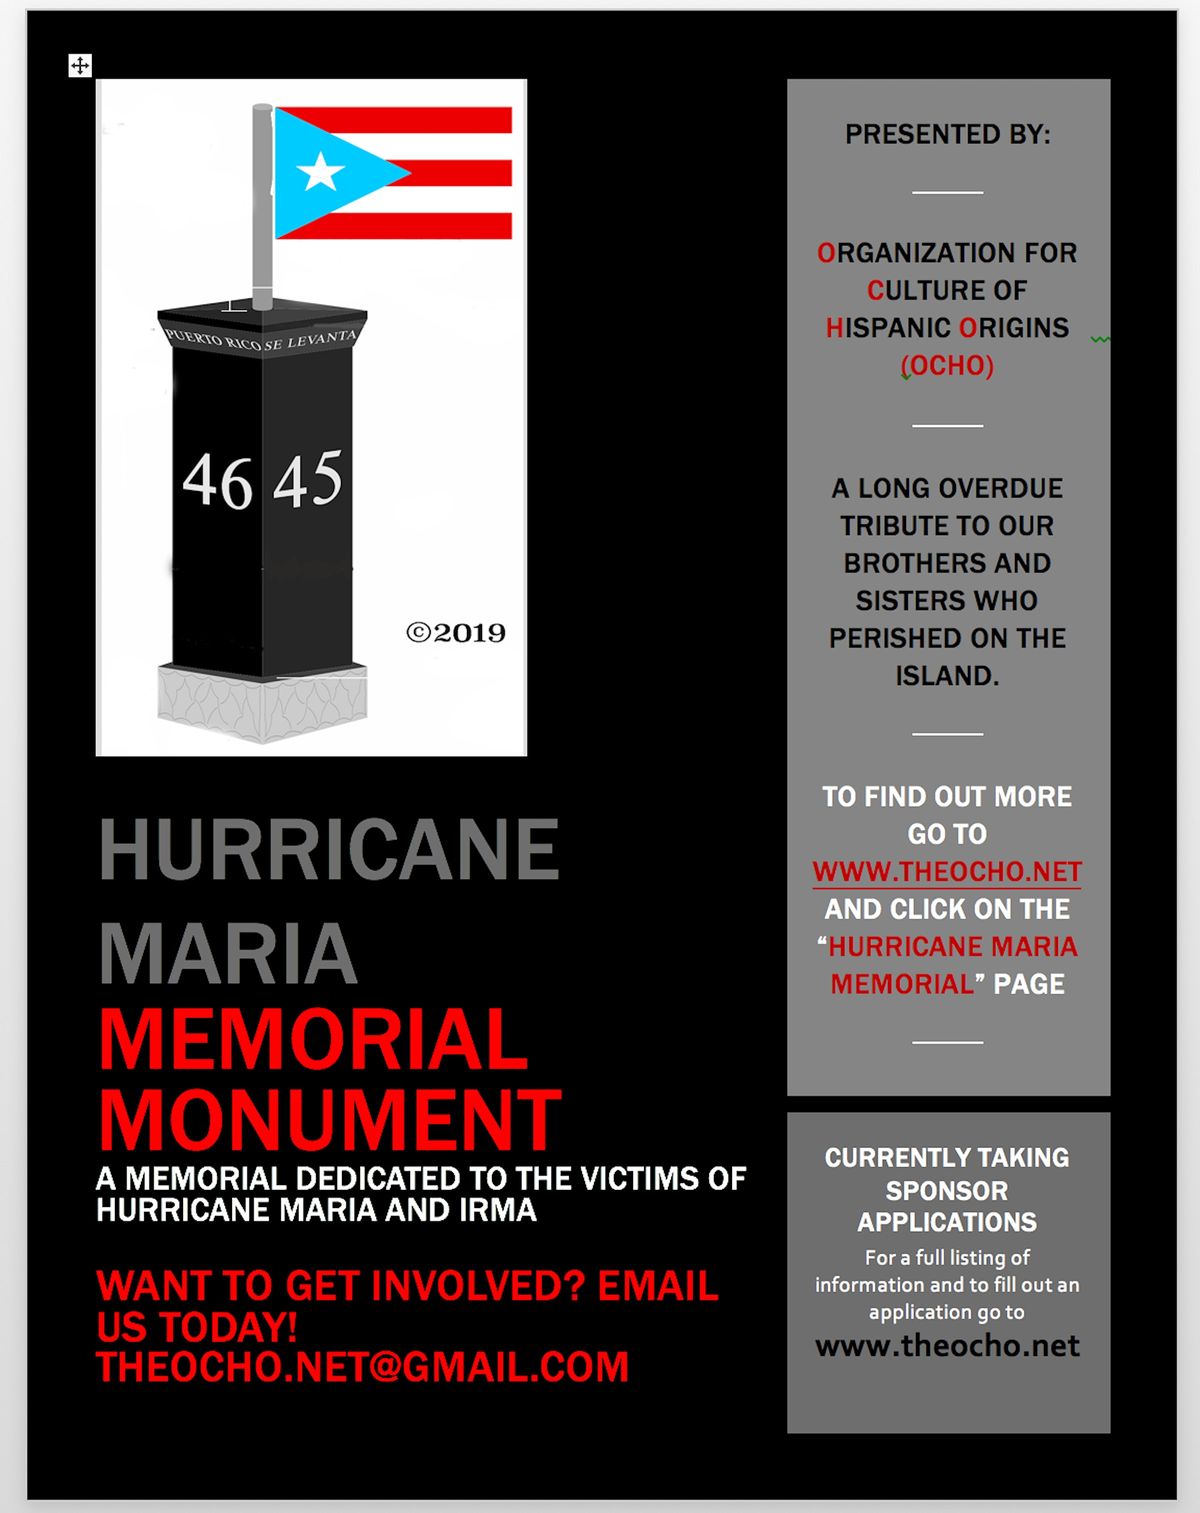 Hurricane Maria Memorial Monument